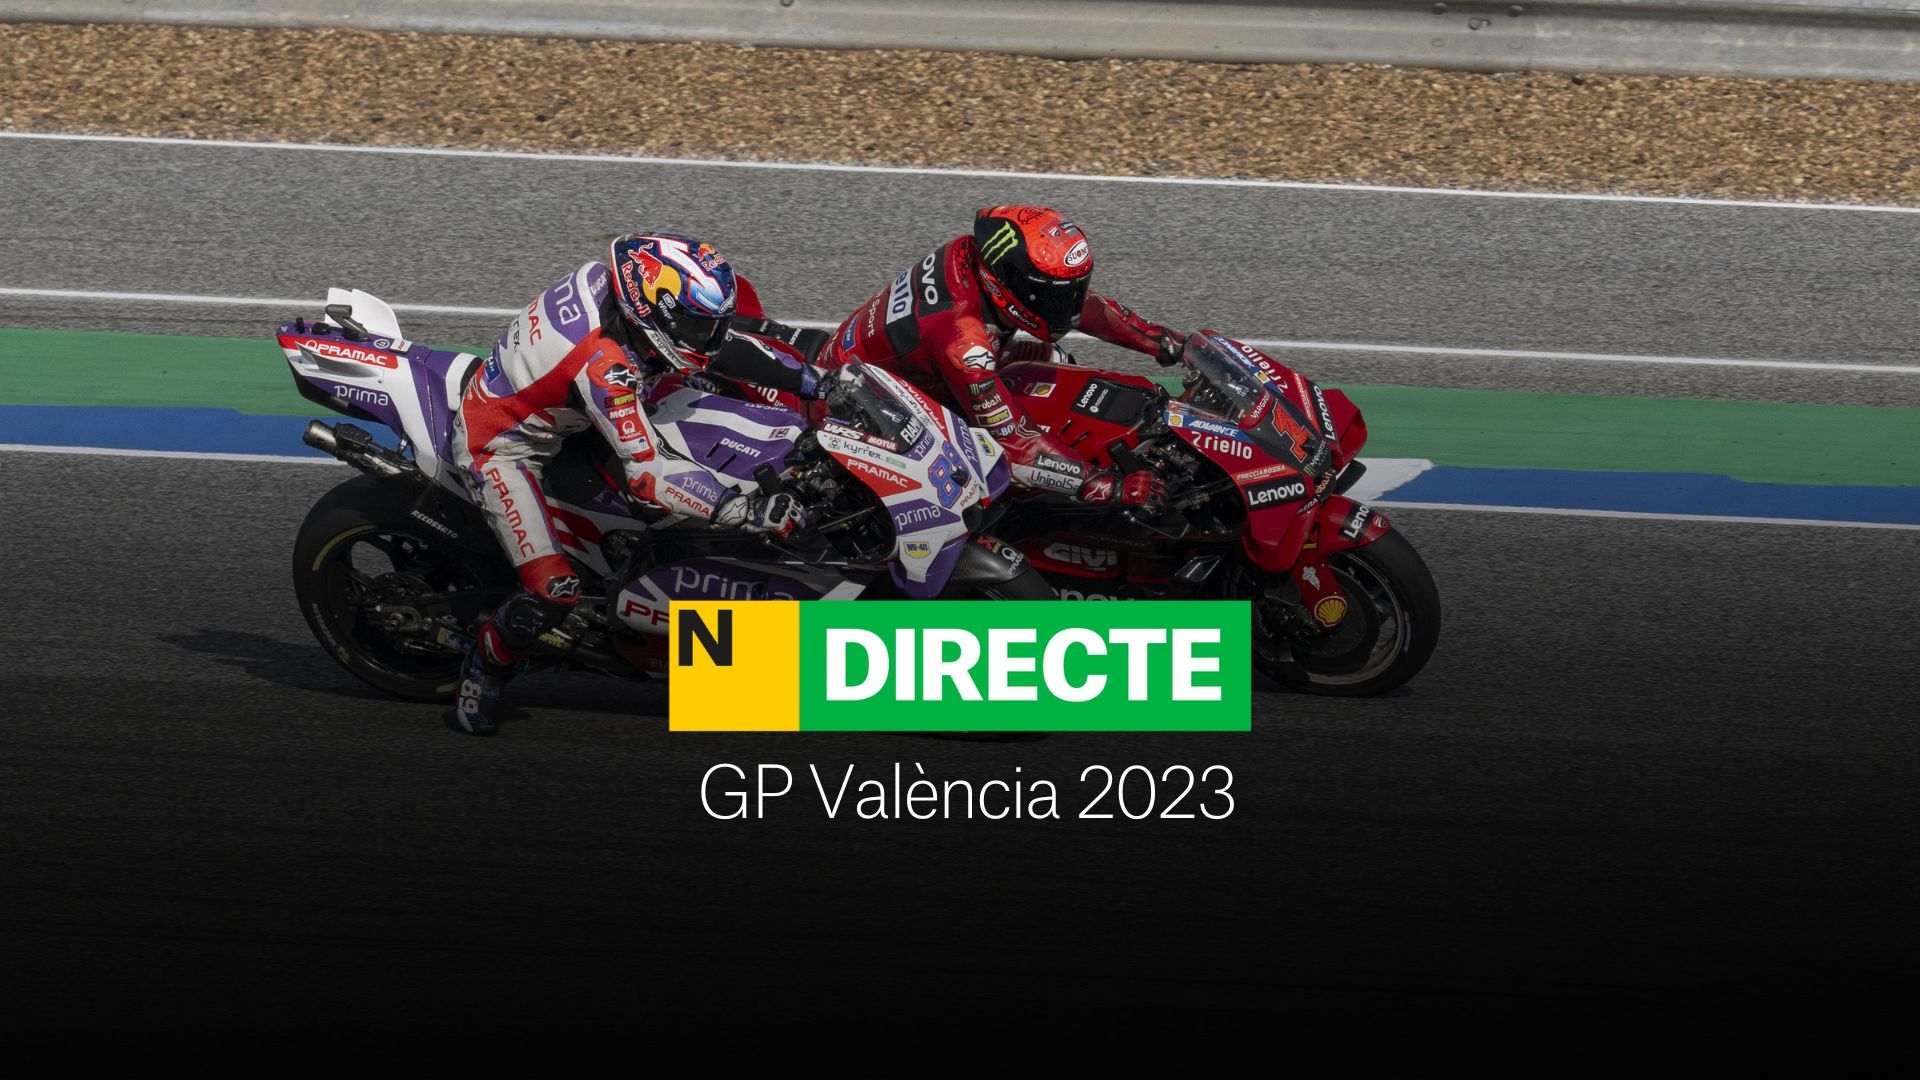 Carrera de MotoGP en Valencia 2023, DIRECTO | Resultado y resumen